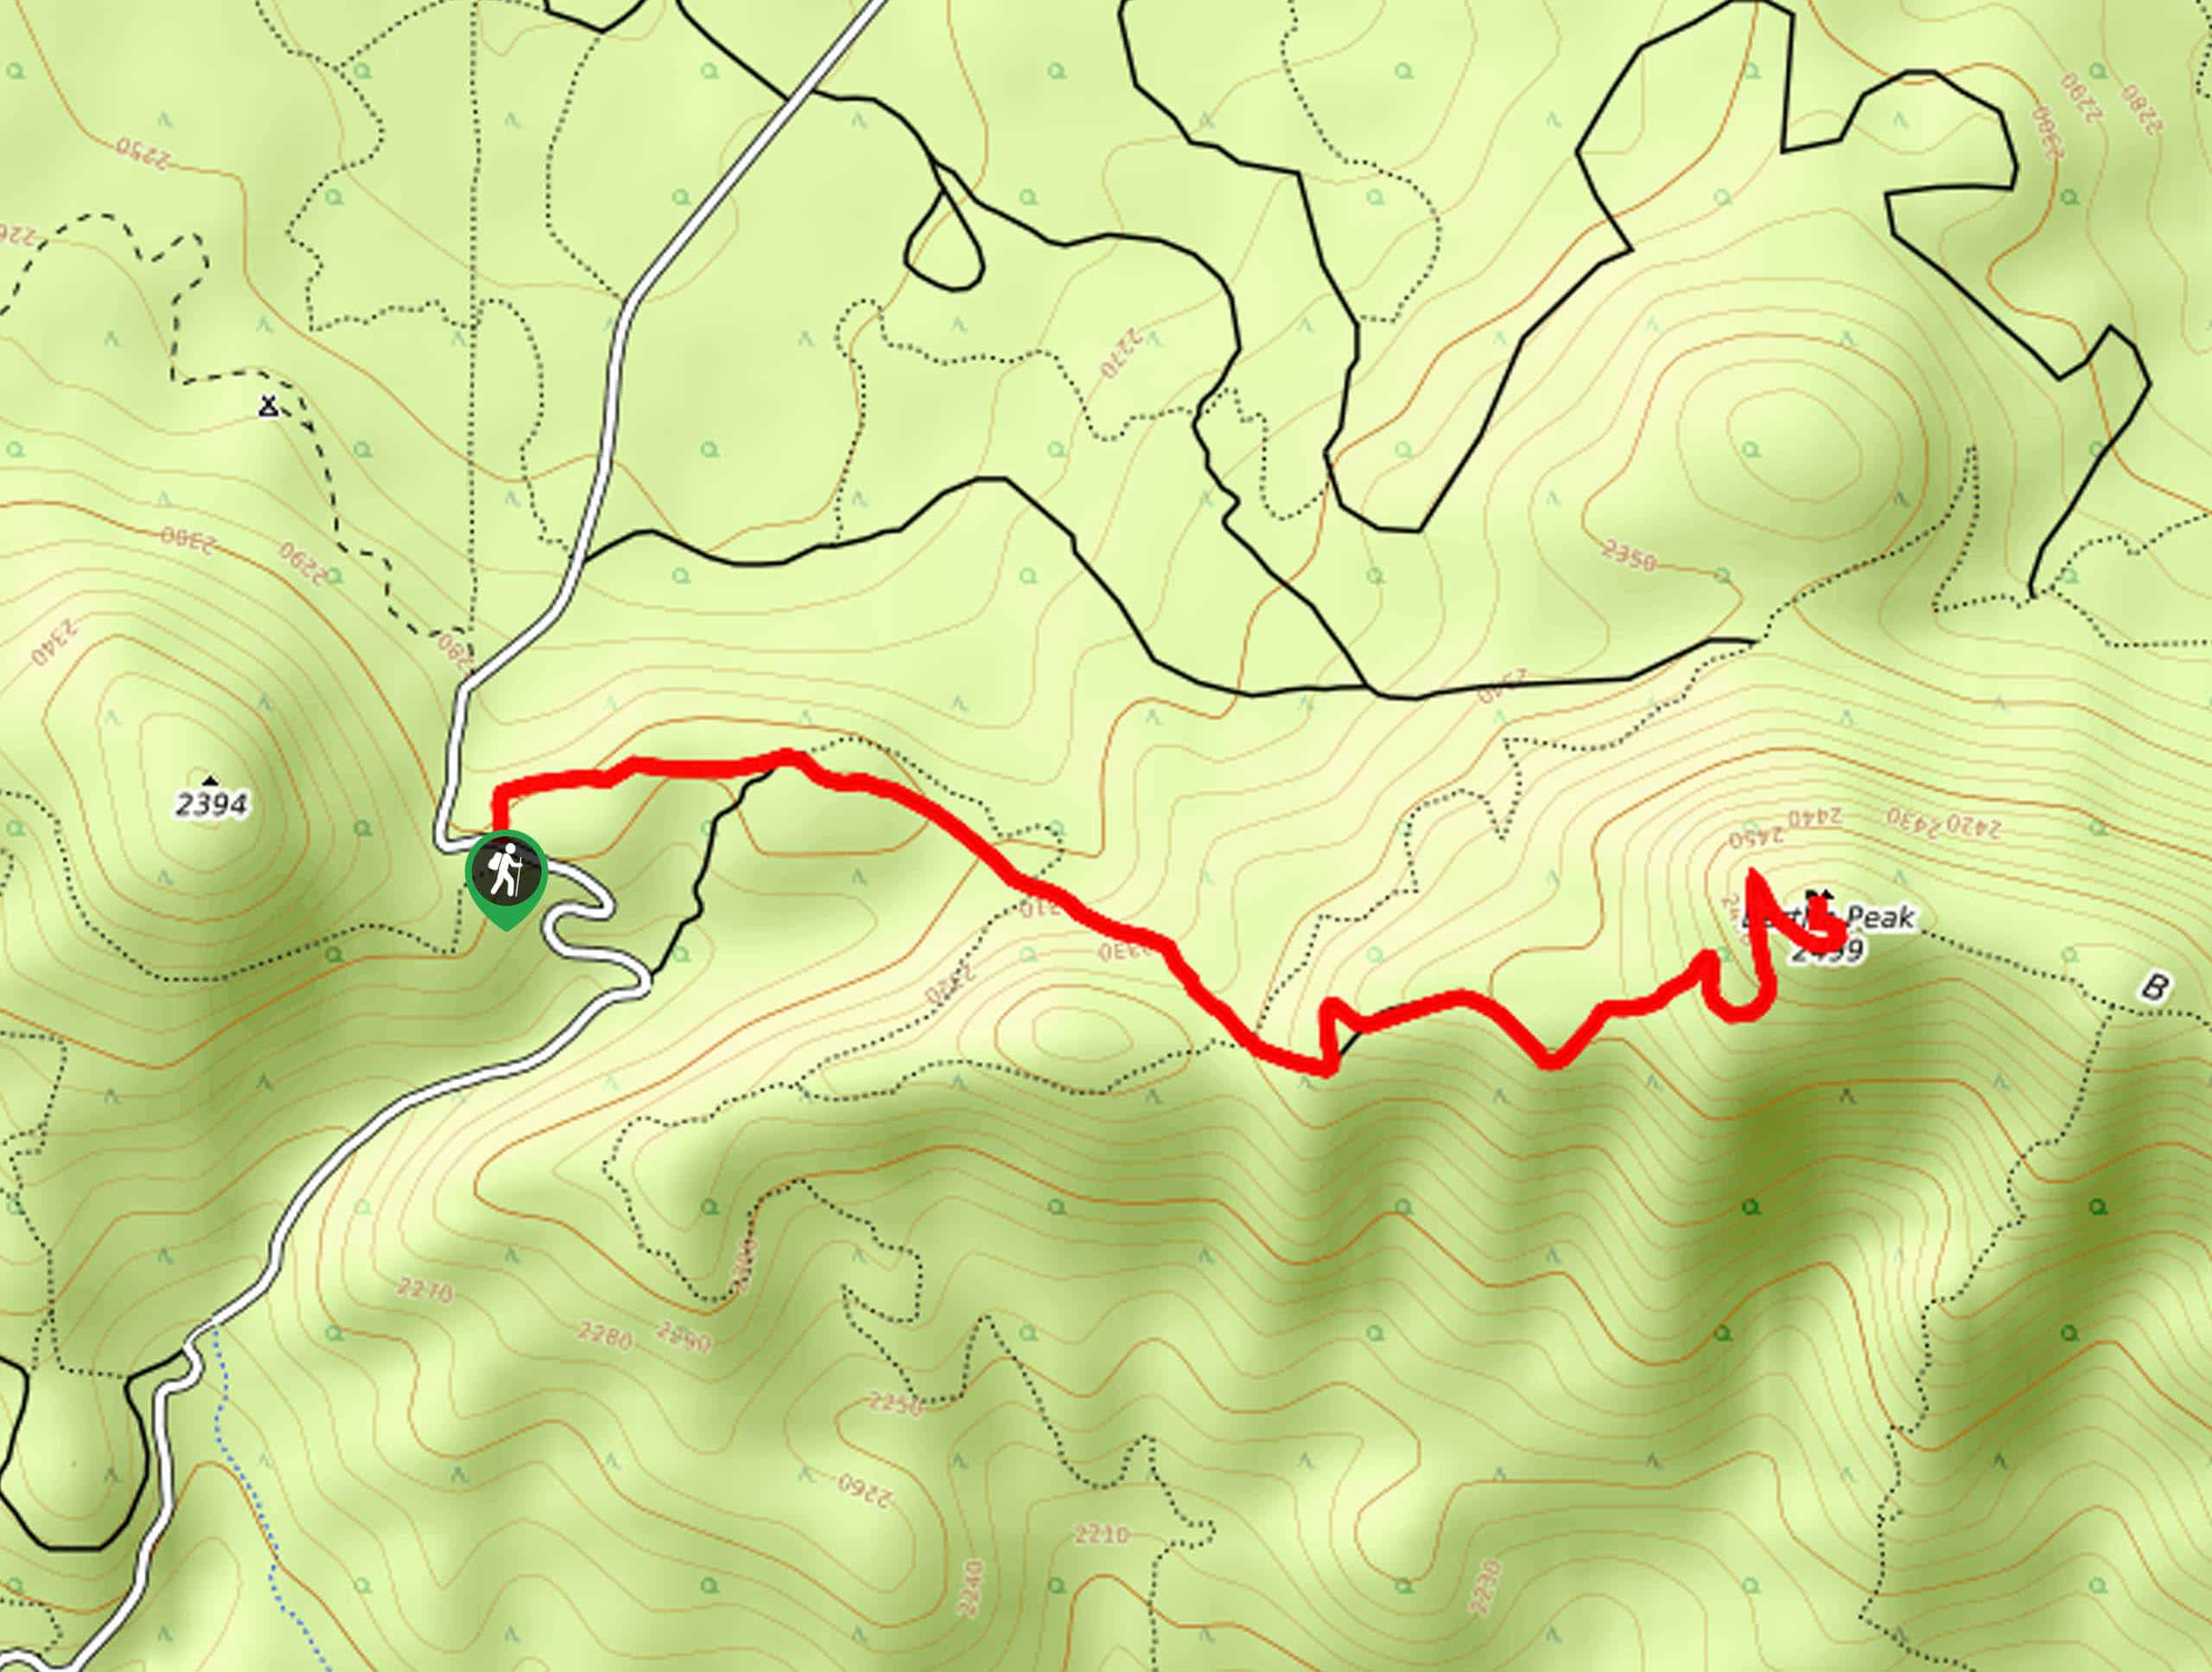 Bertha Peak via Polique Canyon Road Hike Map